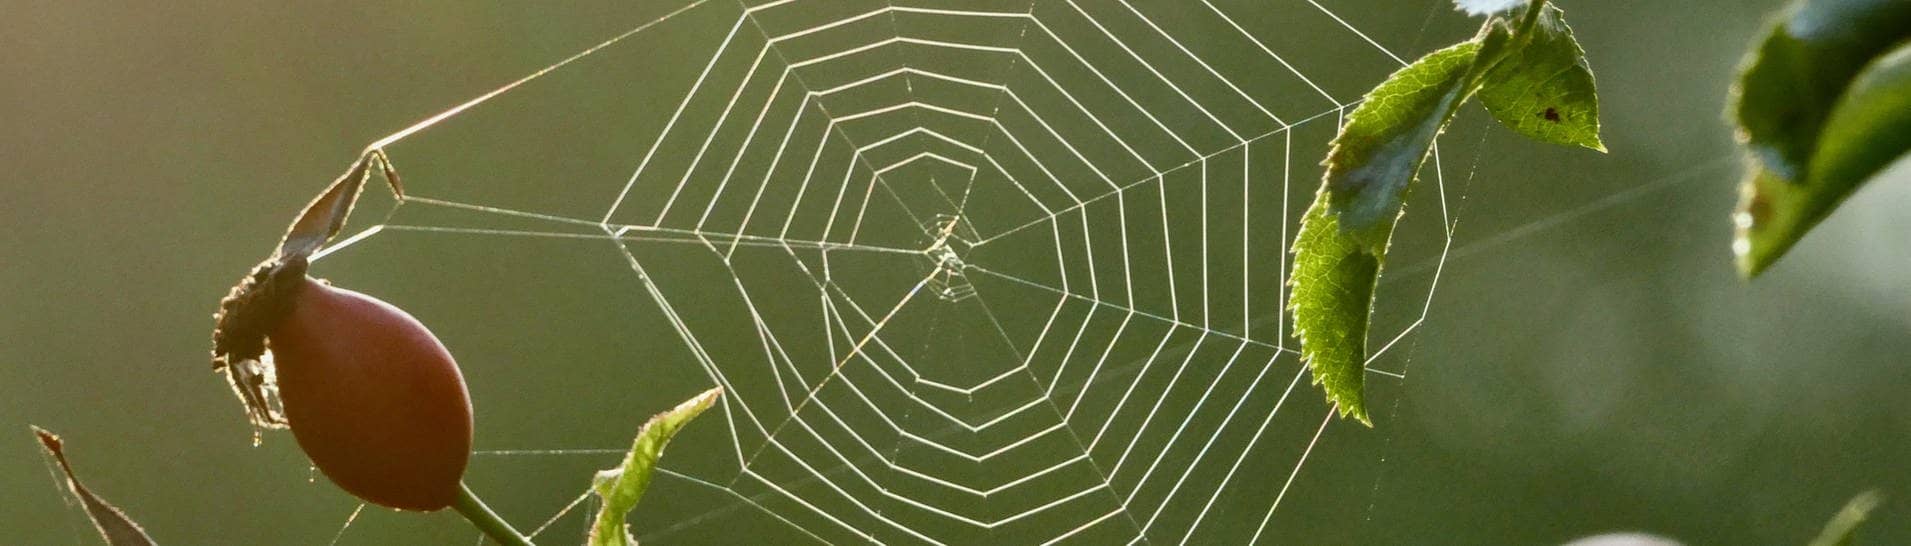 Ein Spinnennetz zwischen den Zweigen einer Hagebutte-Pflanze